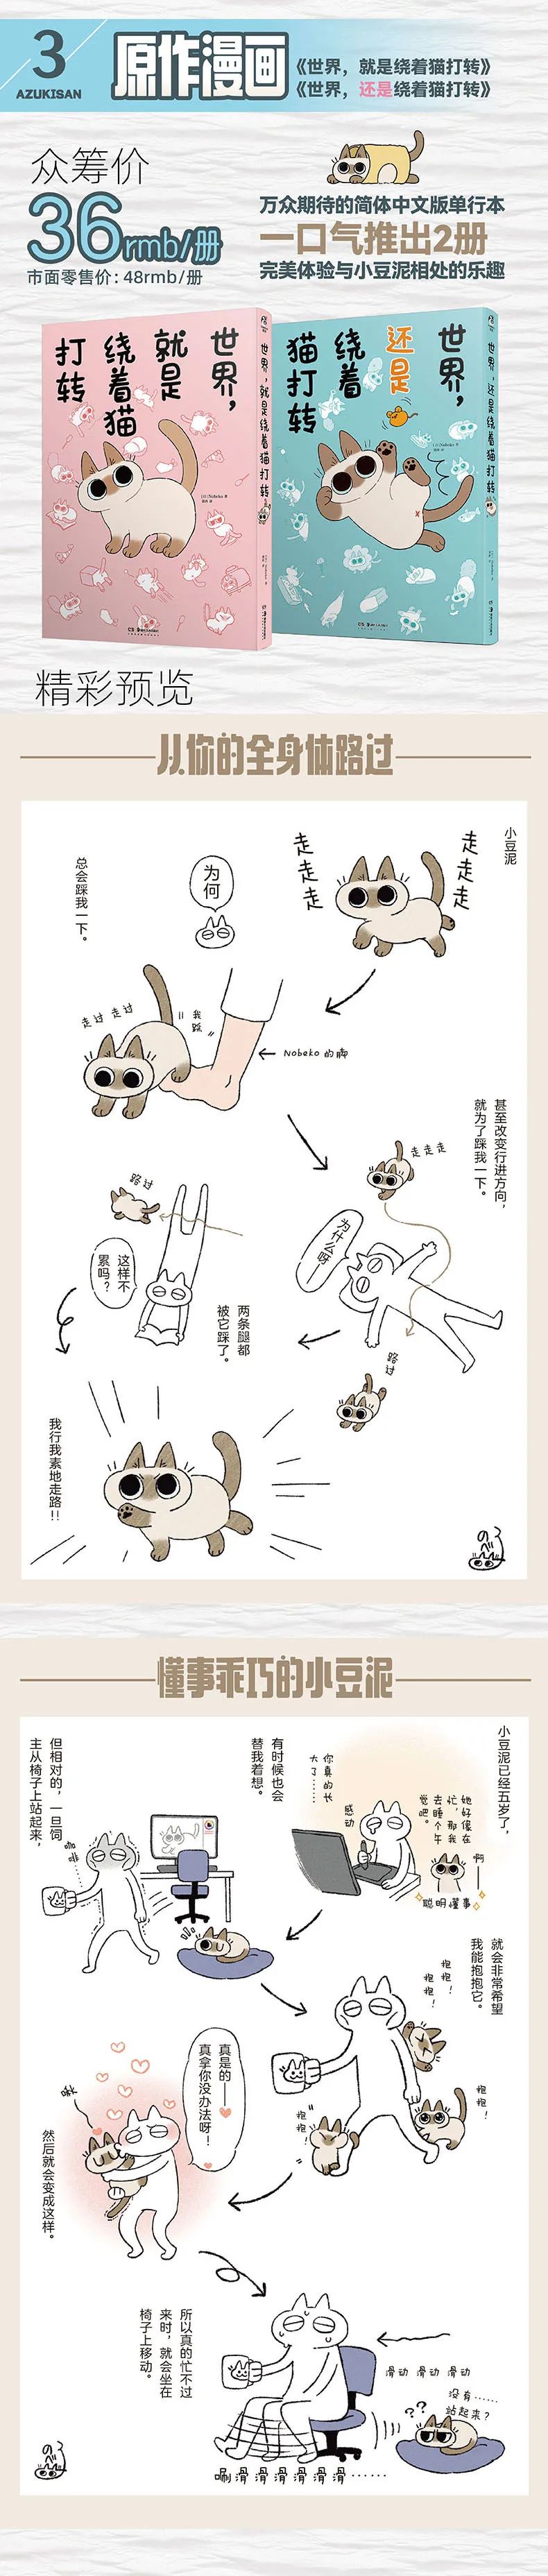 「暹罗猫小豆泥」漫画&周边 哔哩哔哩会员购9月19日众筹开启